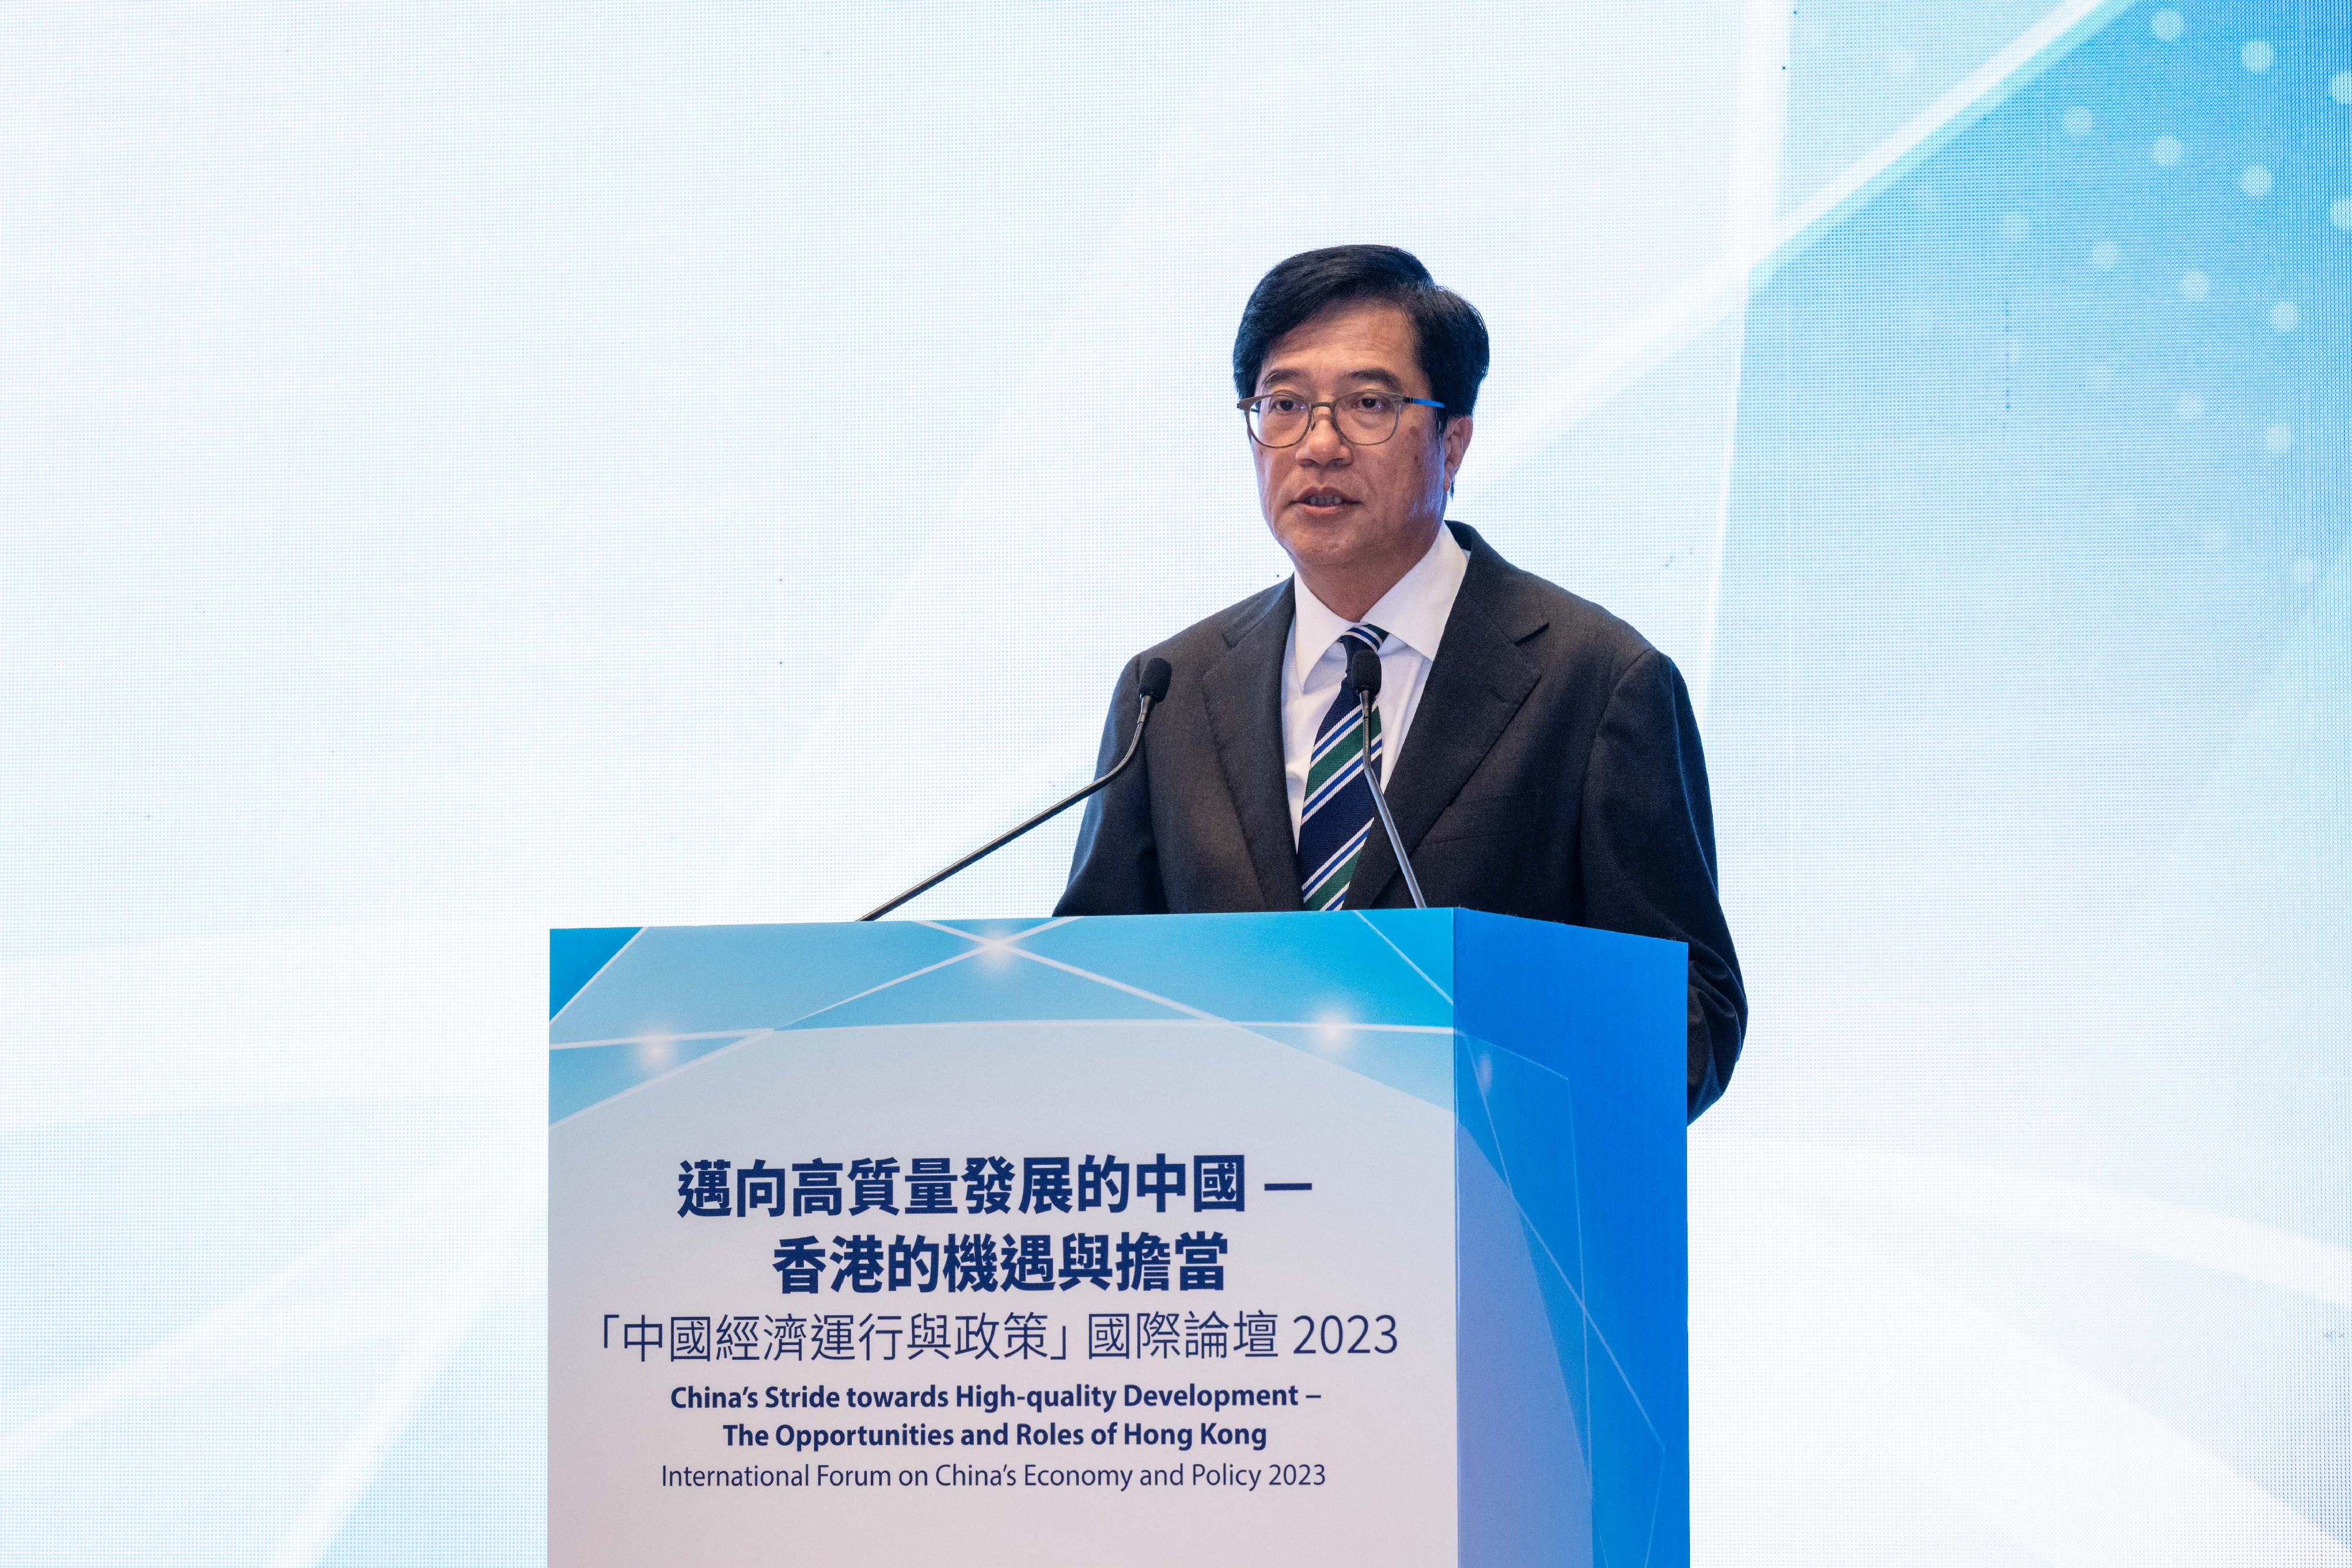 邁向高質量發展的中國──香港的機遇與擔當「中國經濟運行與政策」國際論壇2023今日（十一月十五日）在政府總部舉行。圖示署理財政司司長黃偉綸在論壇作特邀演講。。
